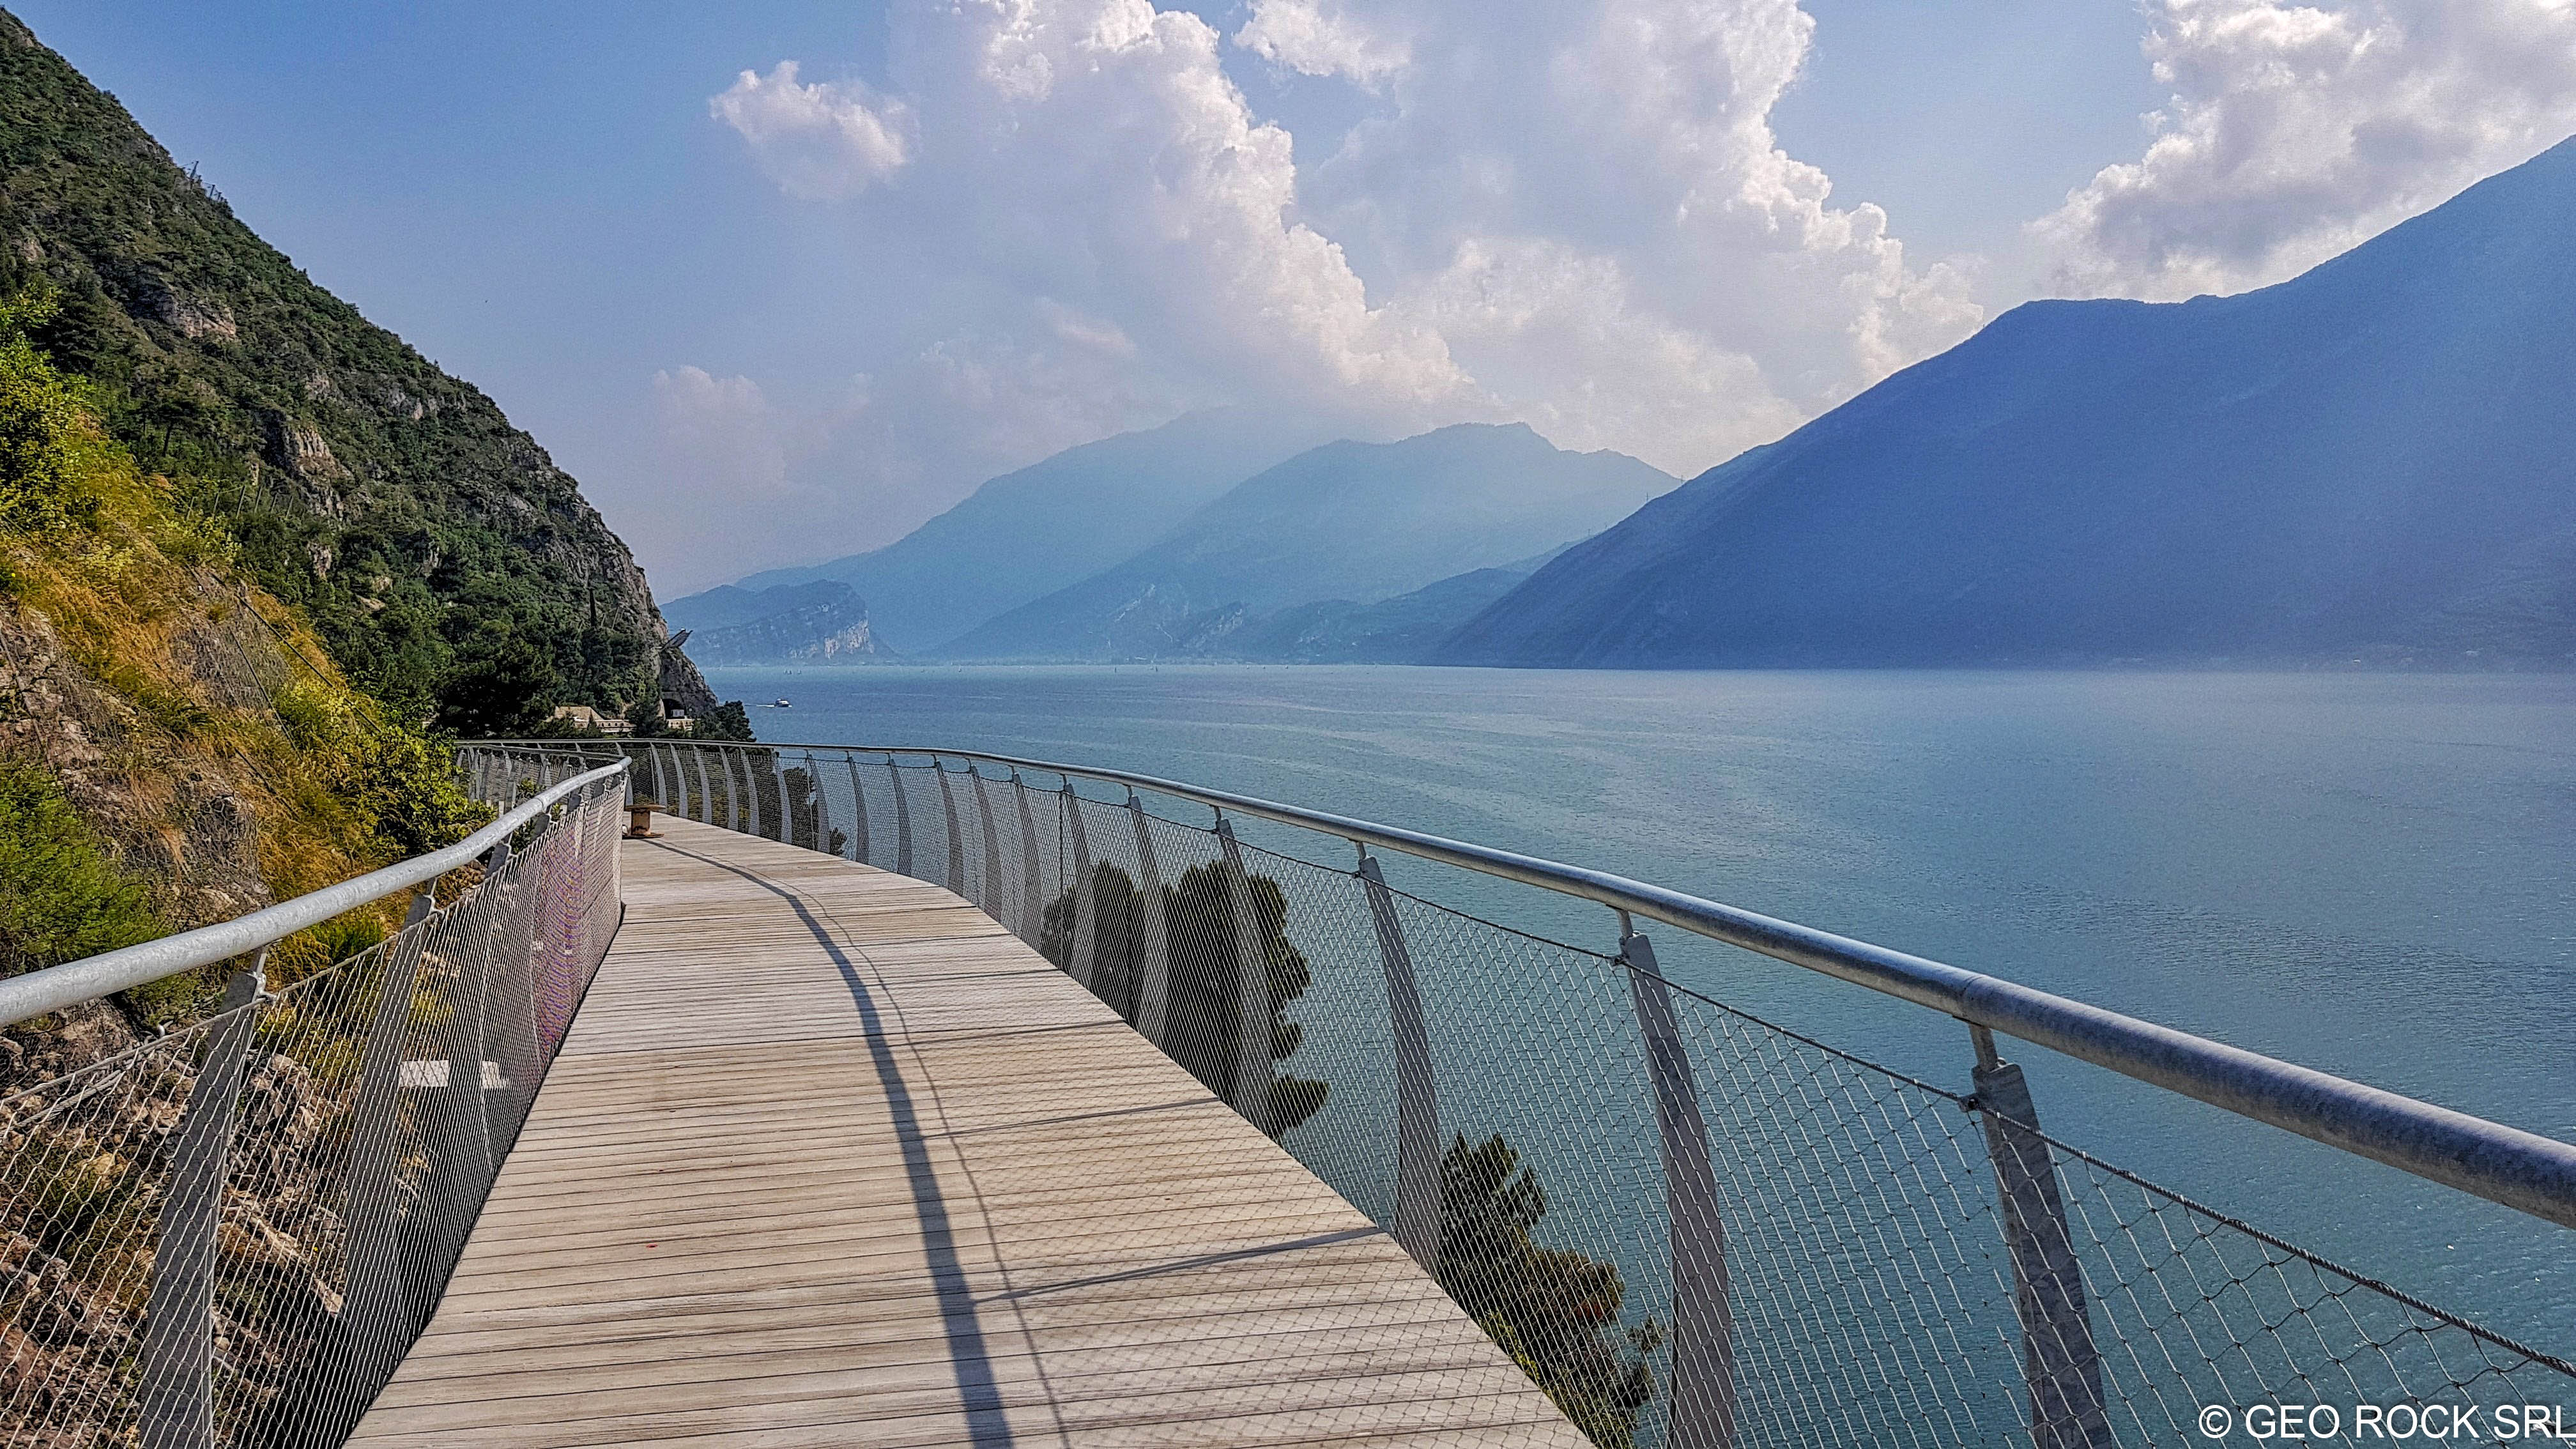 Ciclovia del Garda, Erhöhung der Kosten um 19 Millionen Euro für den Abschnitt im Trentino